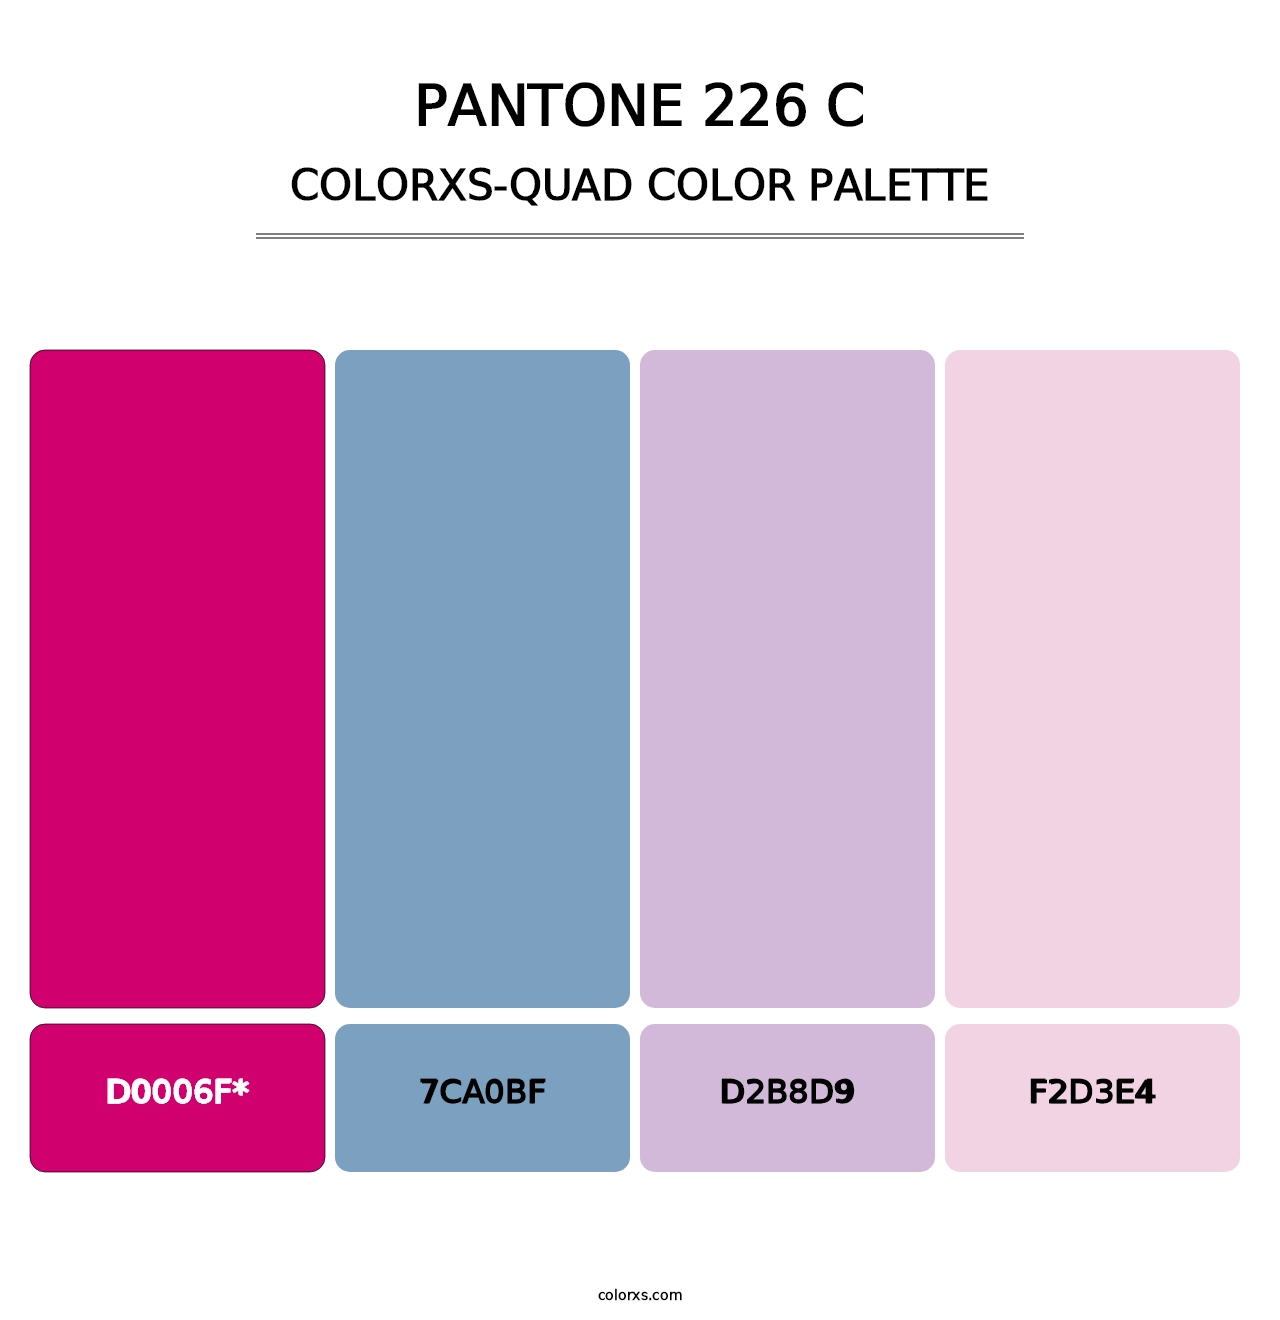 PANTONE 226 C - Colorxs Quad Palette